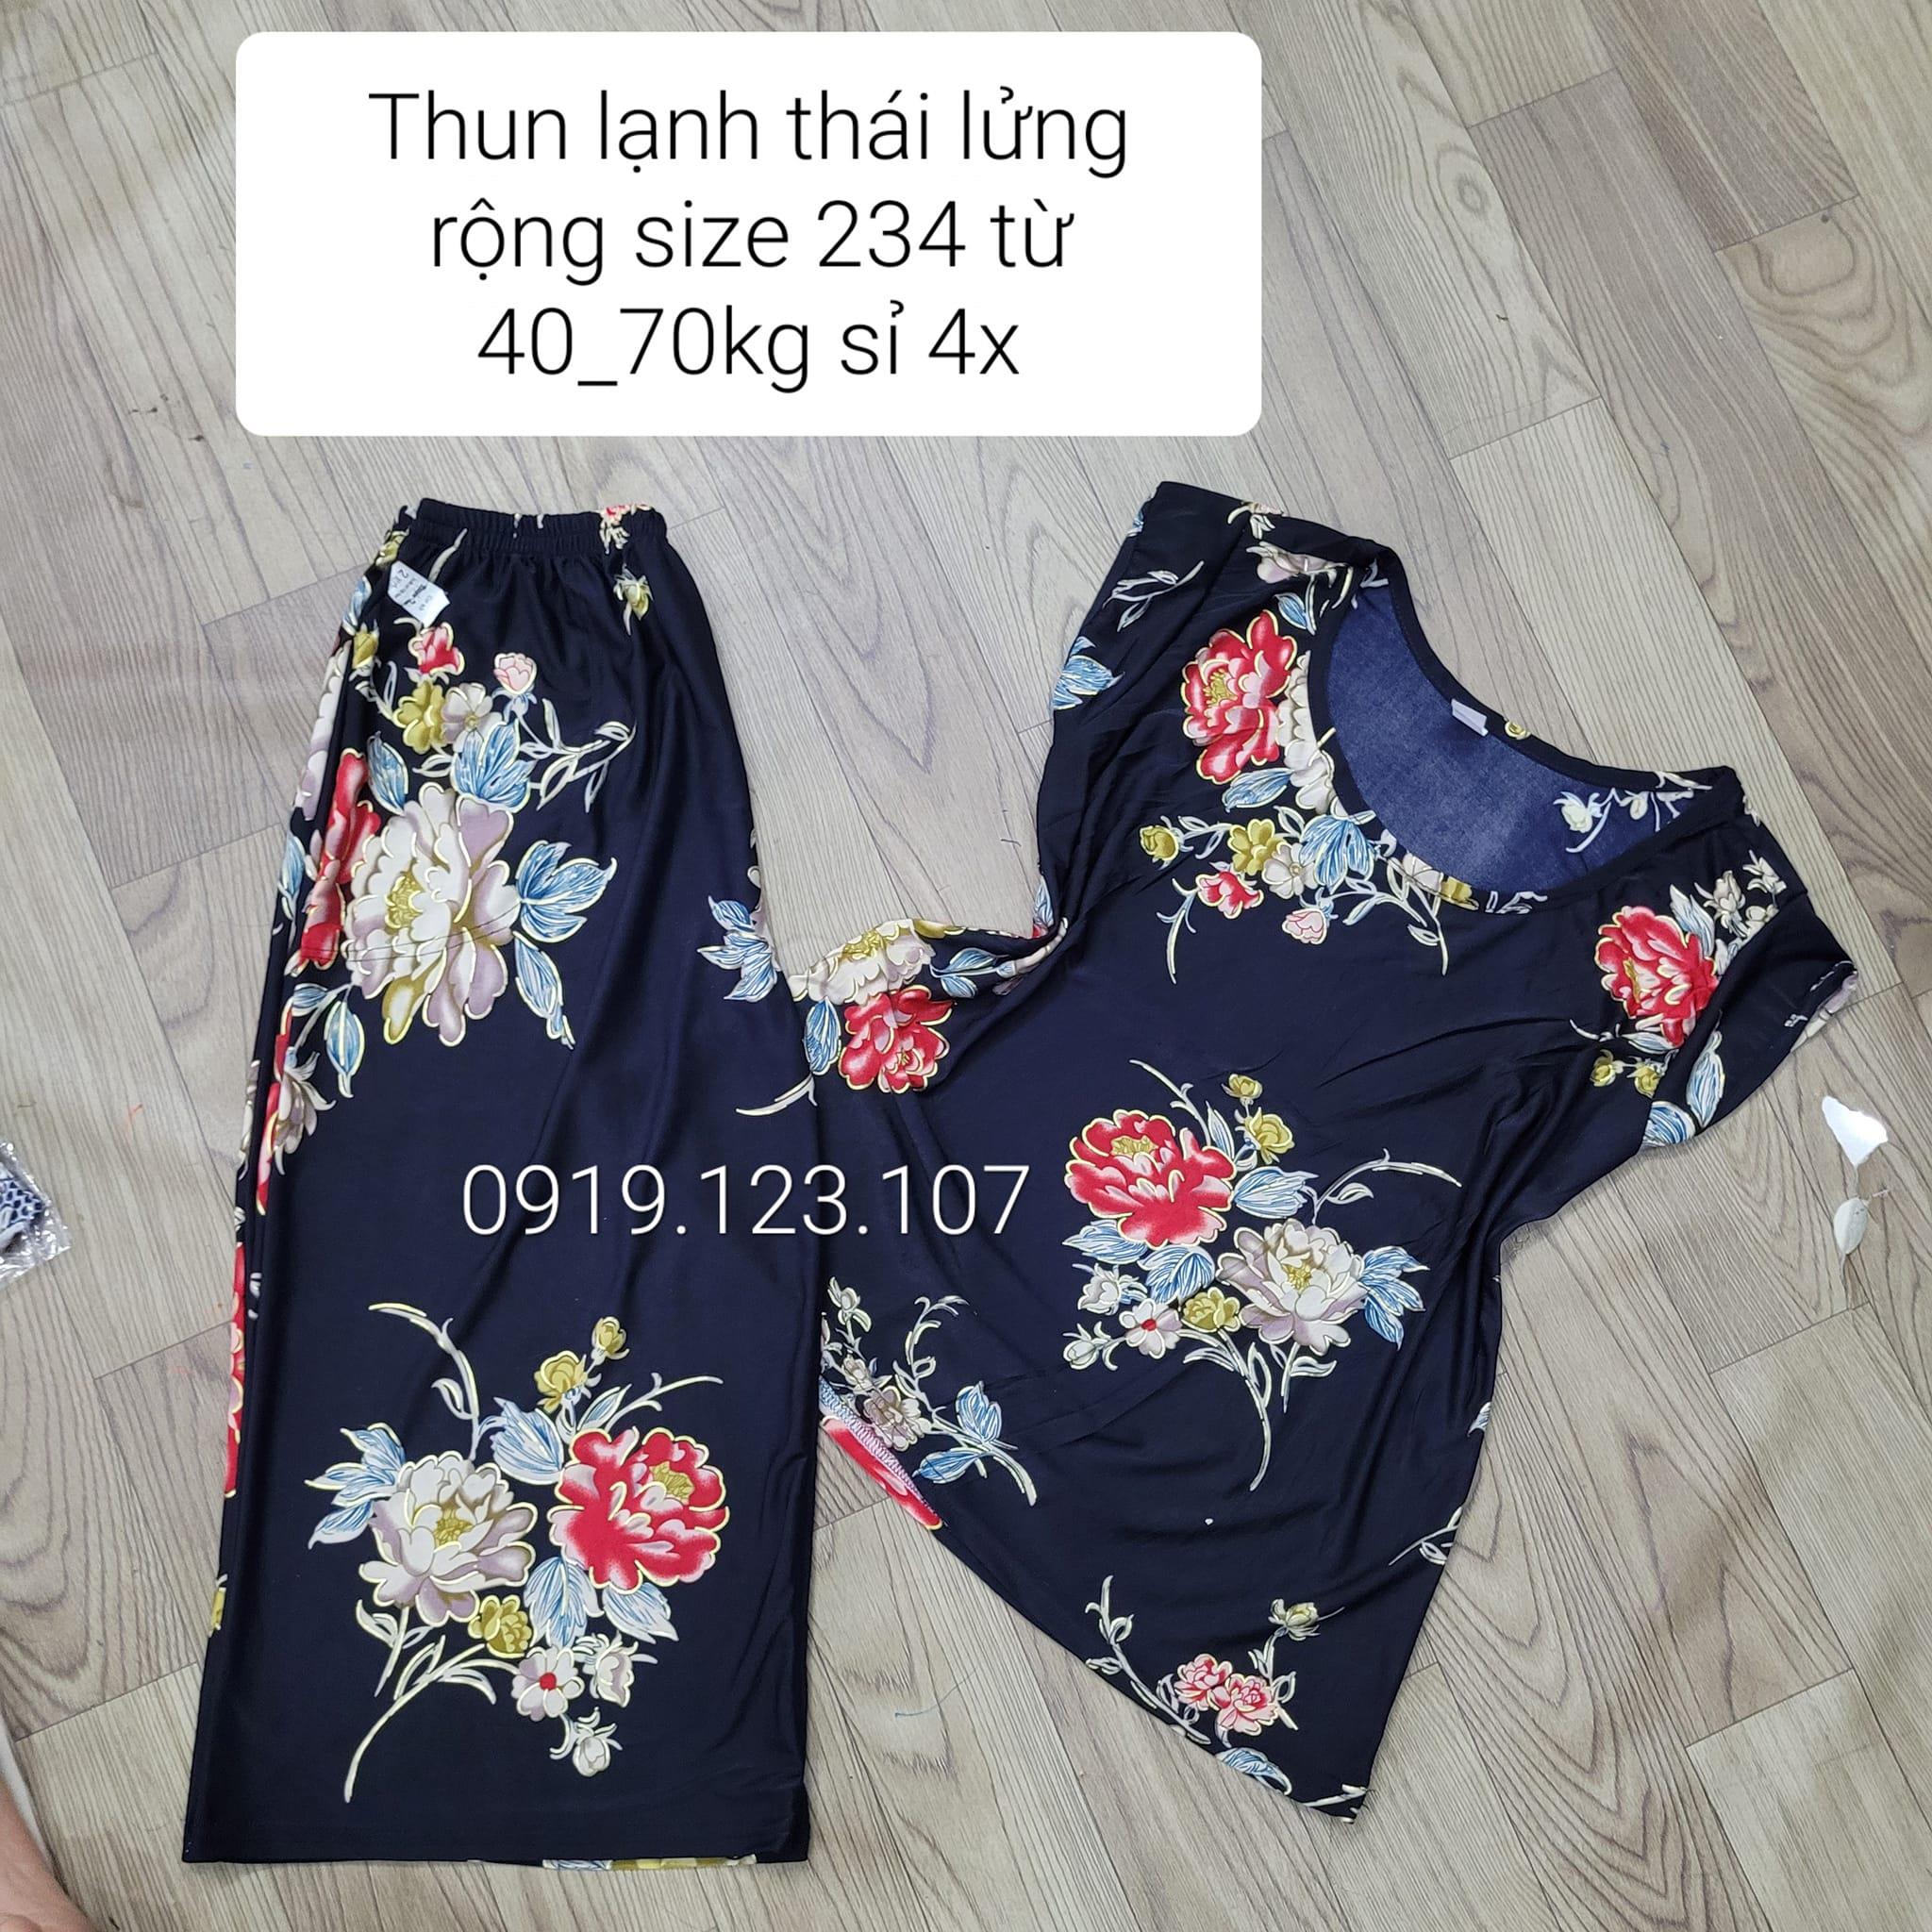 thun-lanh-thai-lung-rong-size-234-tu-4070kg-si-4x-pn999904